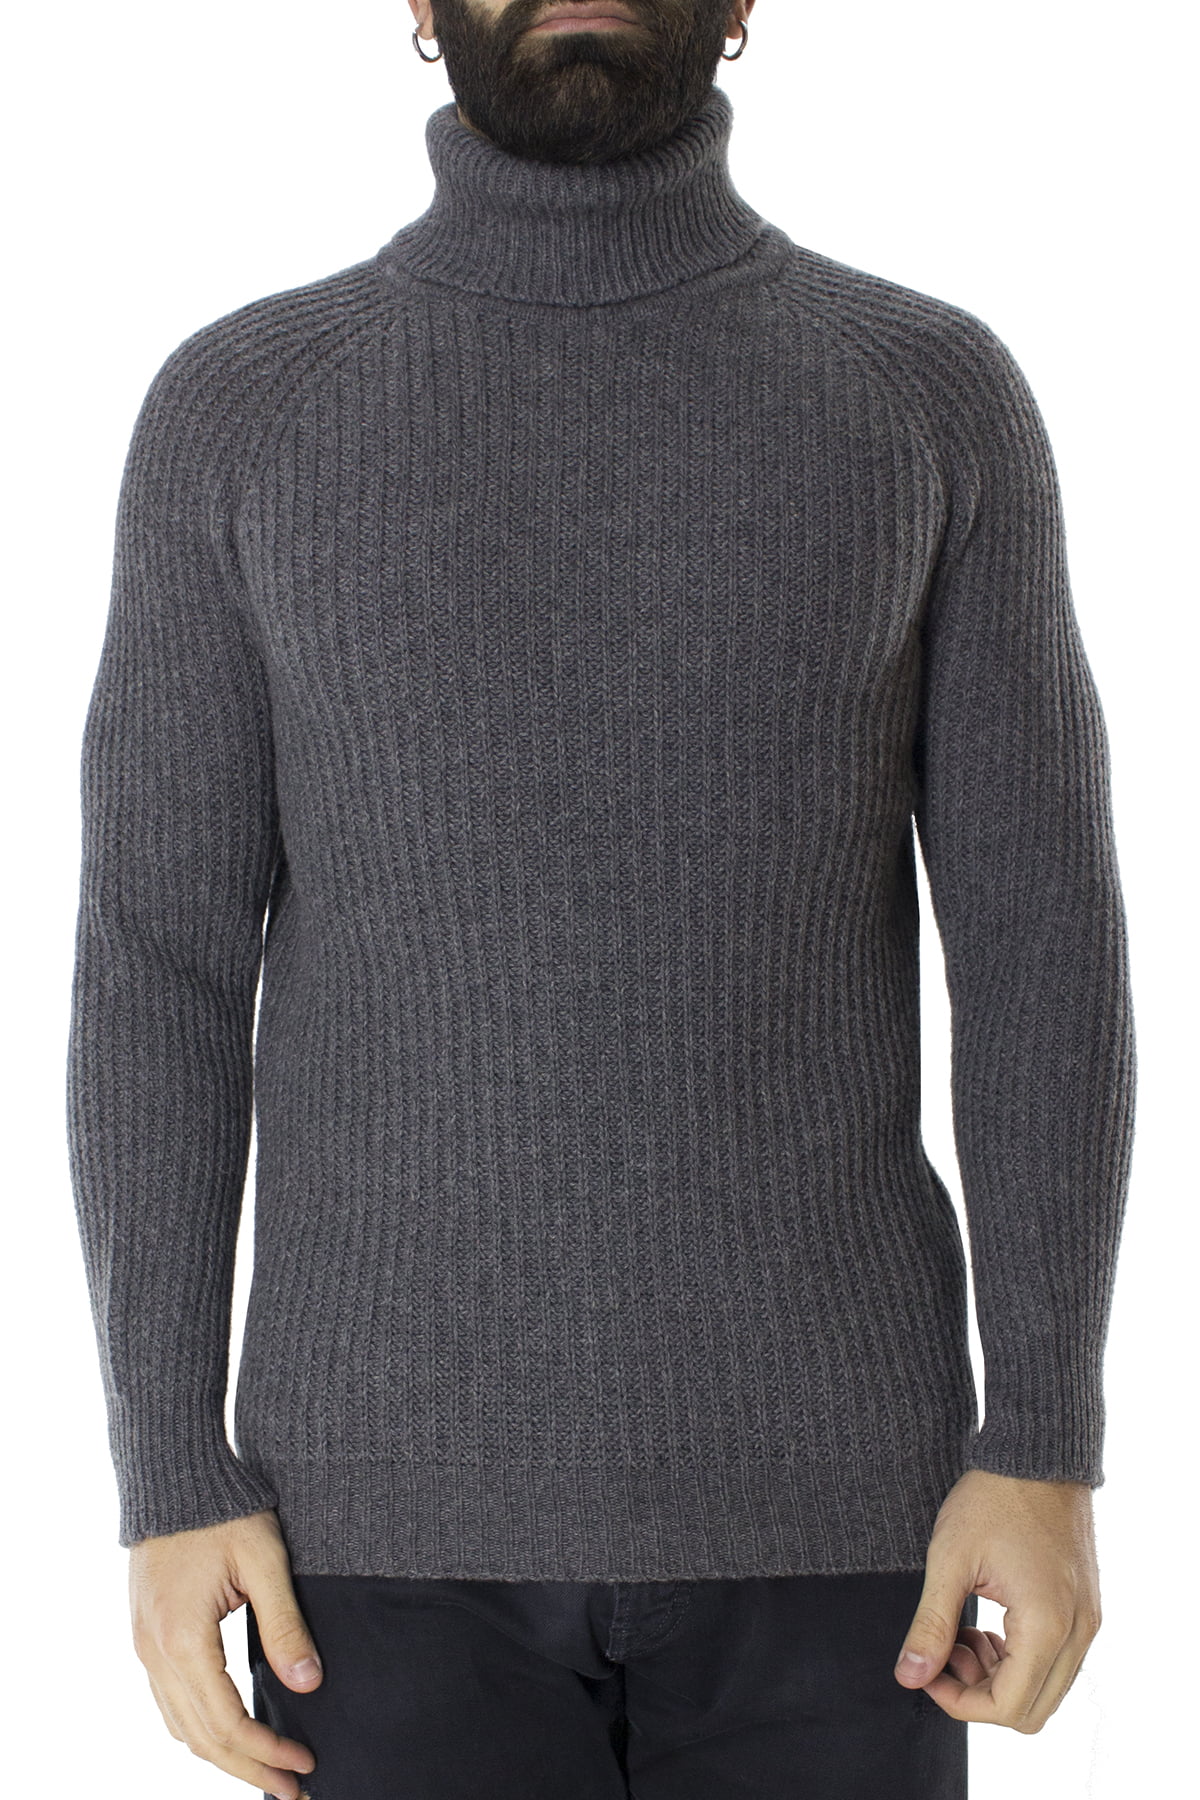 Maglione uomo collo alto grigio in lana merinos a costa inglese slim fit made in italy